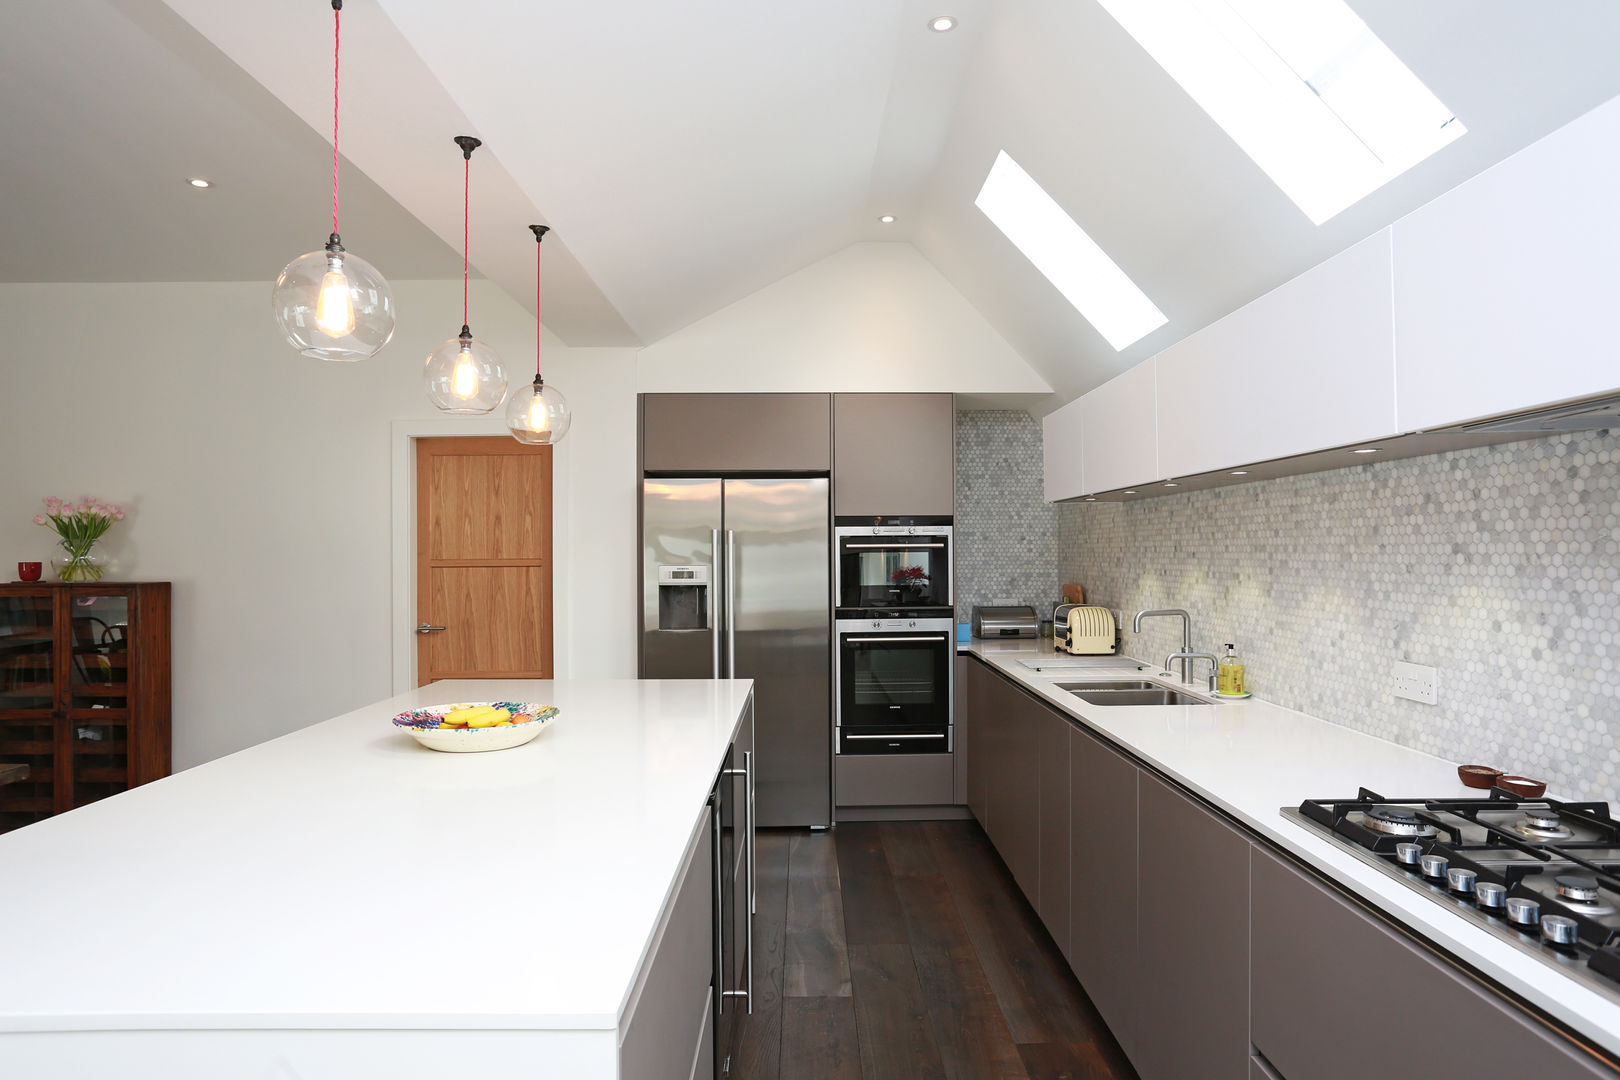 Basalt grey and Polar white satin lacquer kitchen​ LWK London Kitchens Cocinas modernas: Ideas, imágenes y decoración